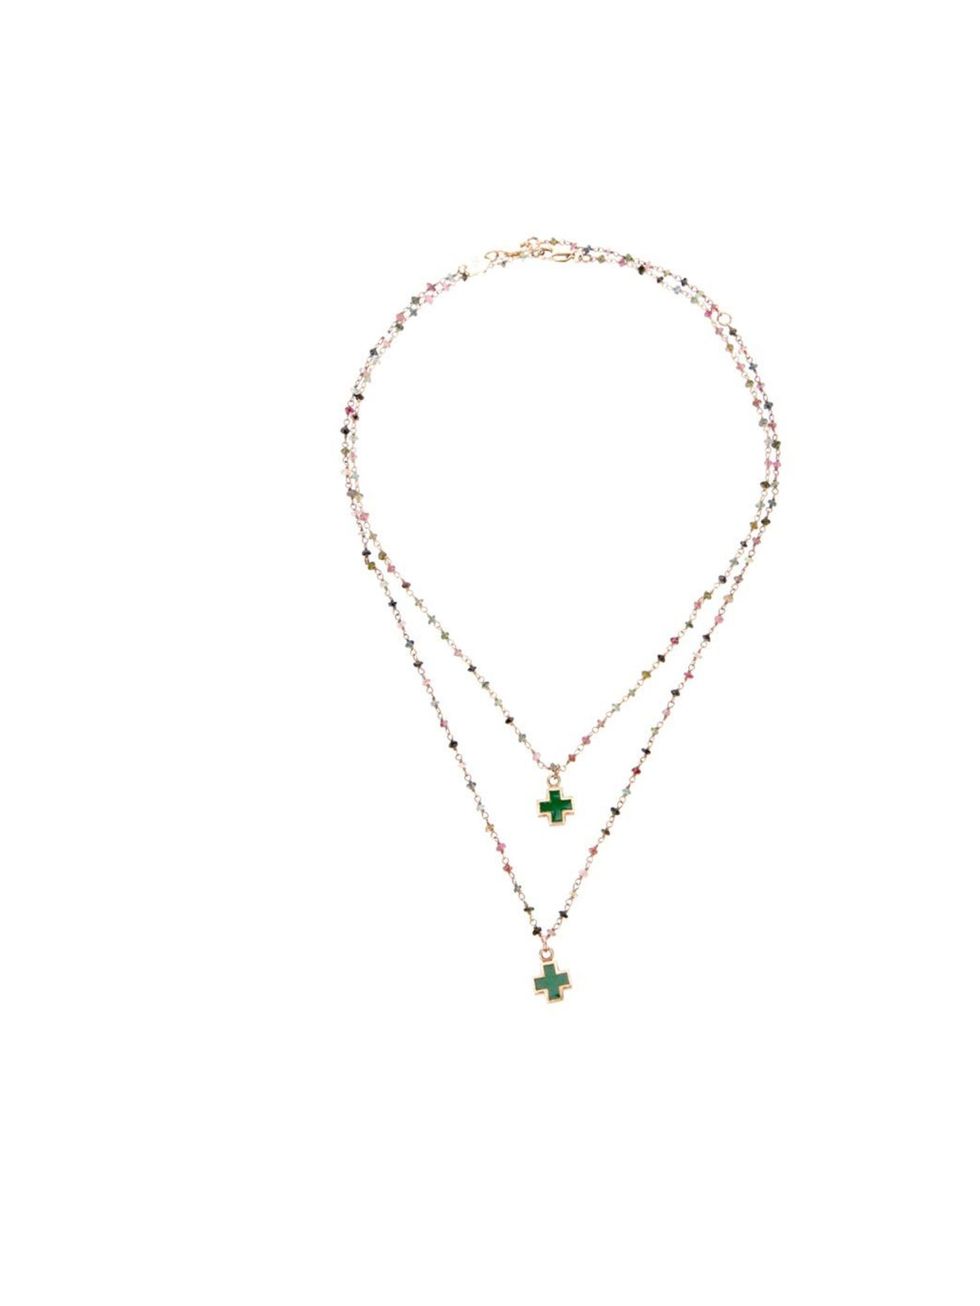 <p>Tess Van Ghert necklace, £135, at <a href="http://www.farfetch.com/shopping/women/tess-van-ghert-cross-pendant-necklace-item-10211321.aspx">Farfetch</a></p>